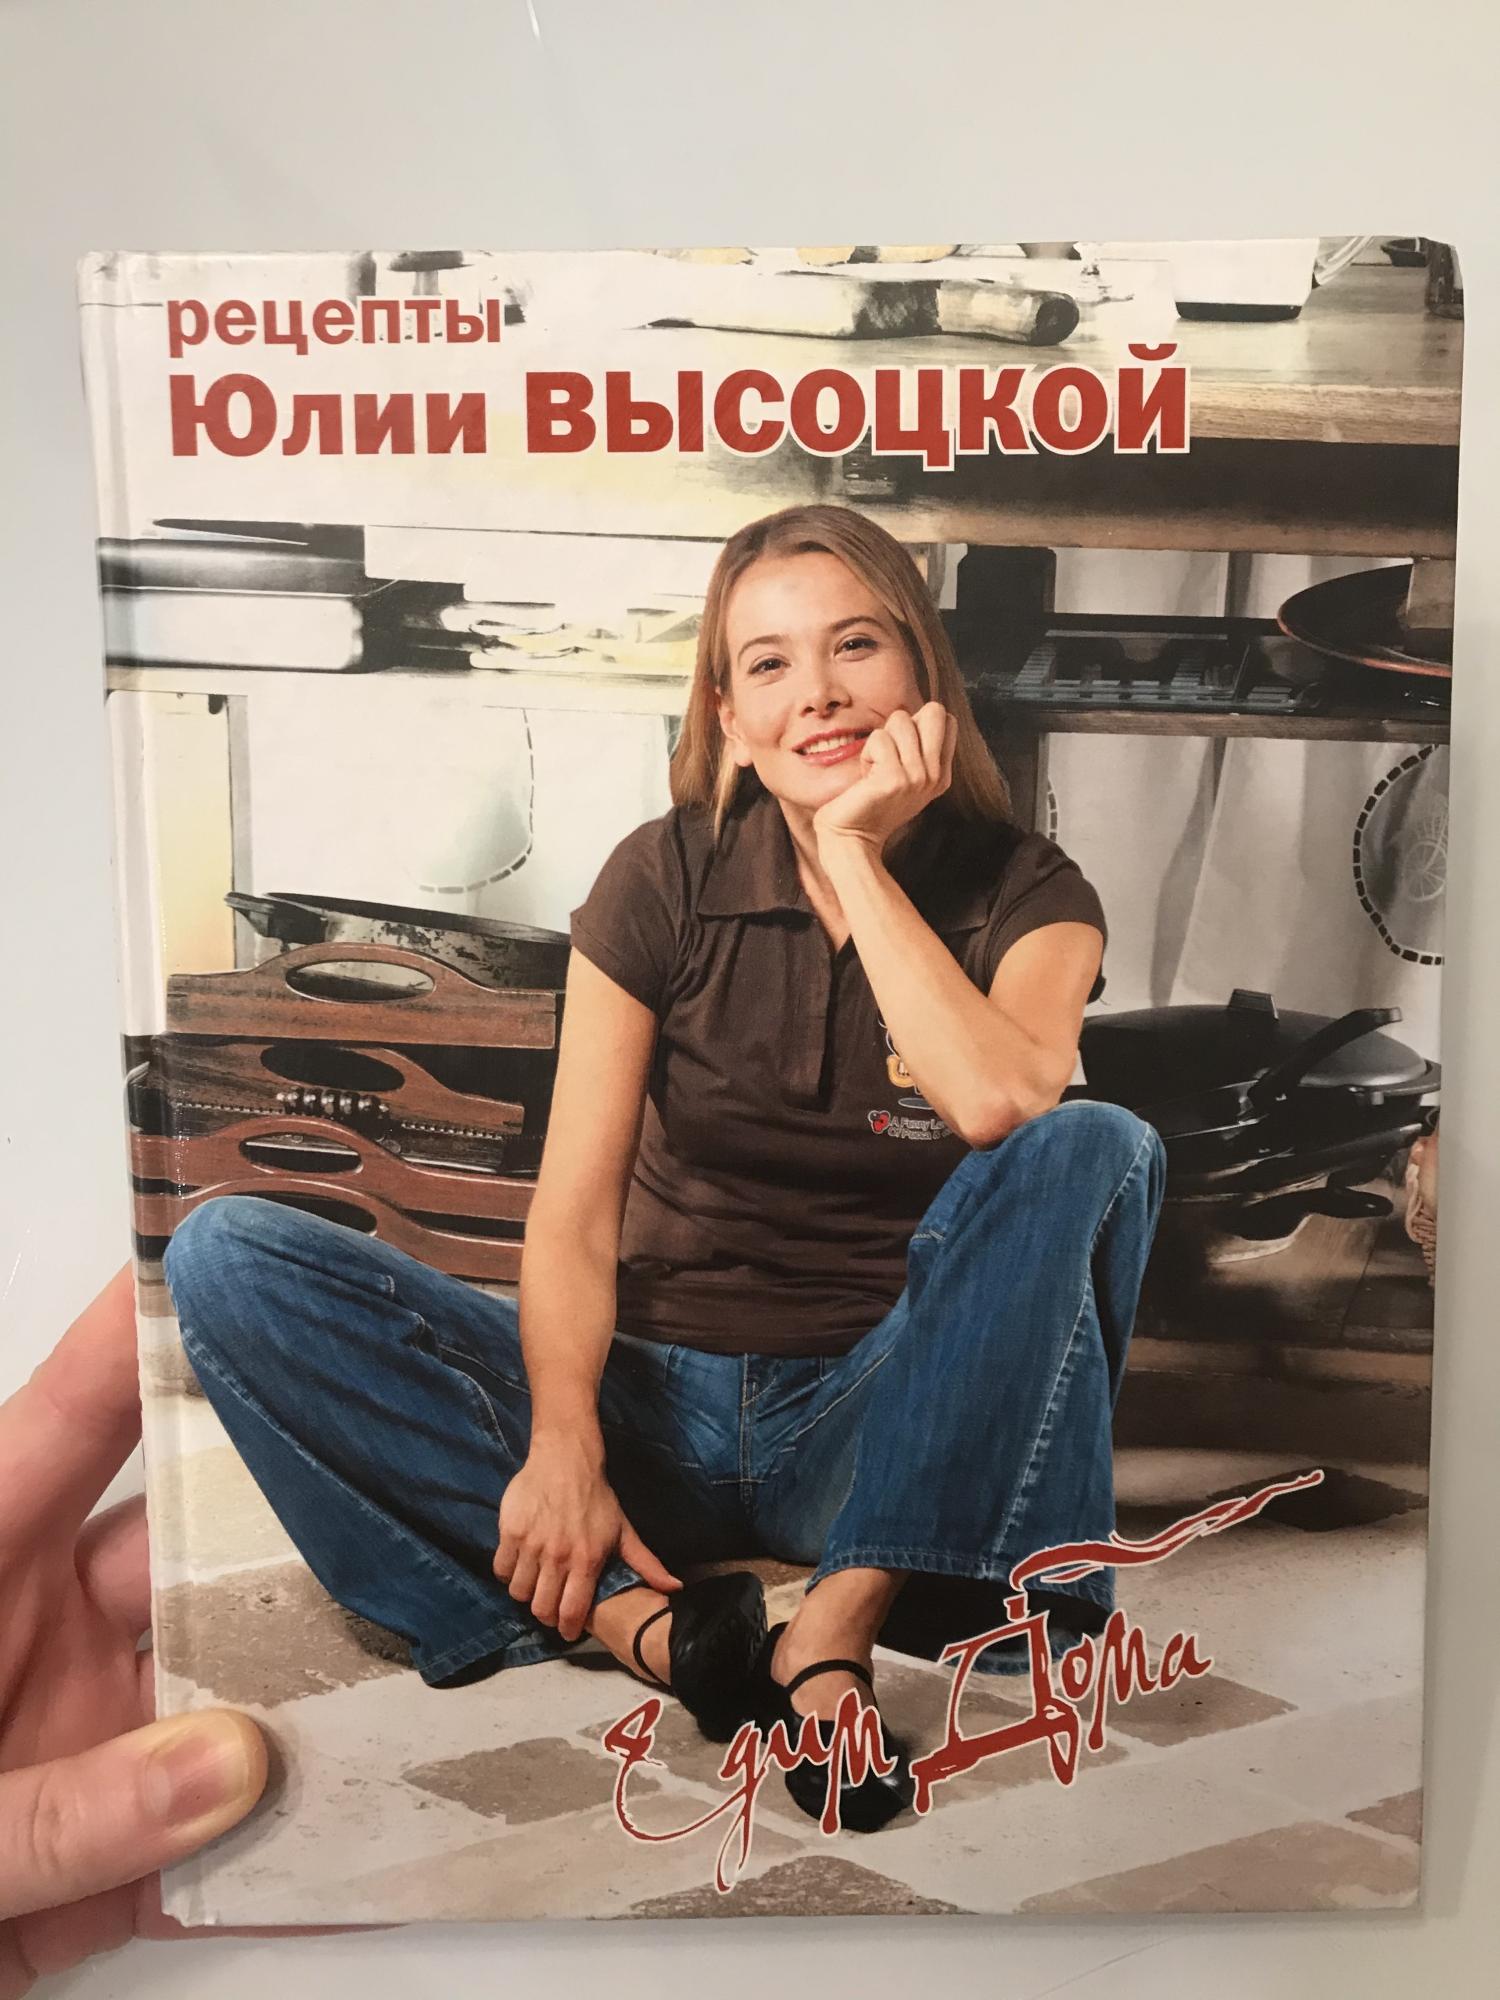 Юлия высоцкая в джинсах